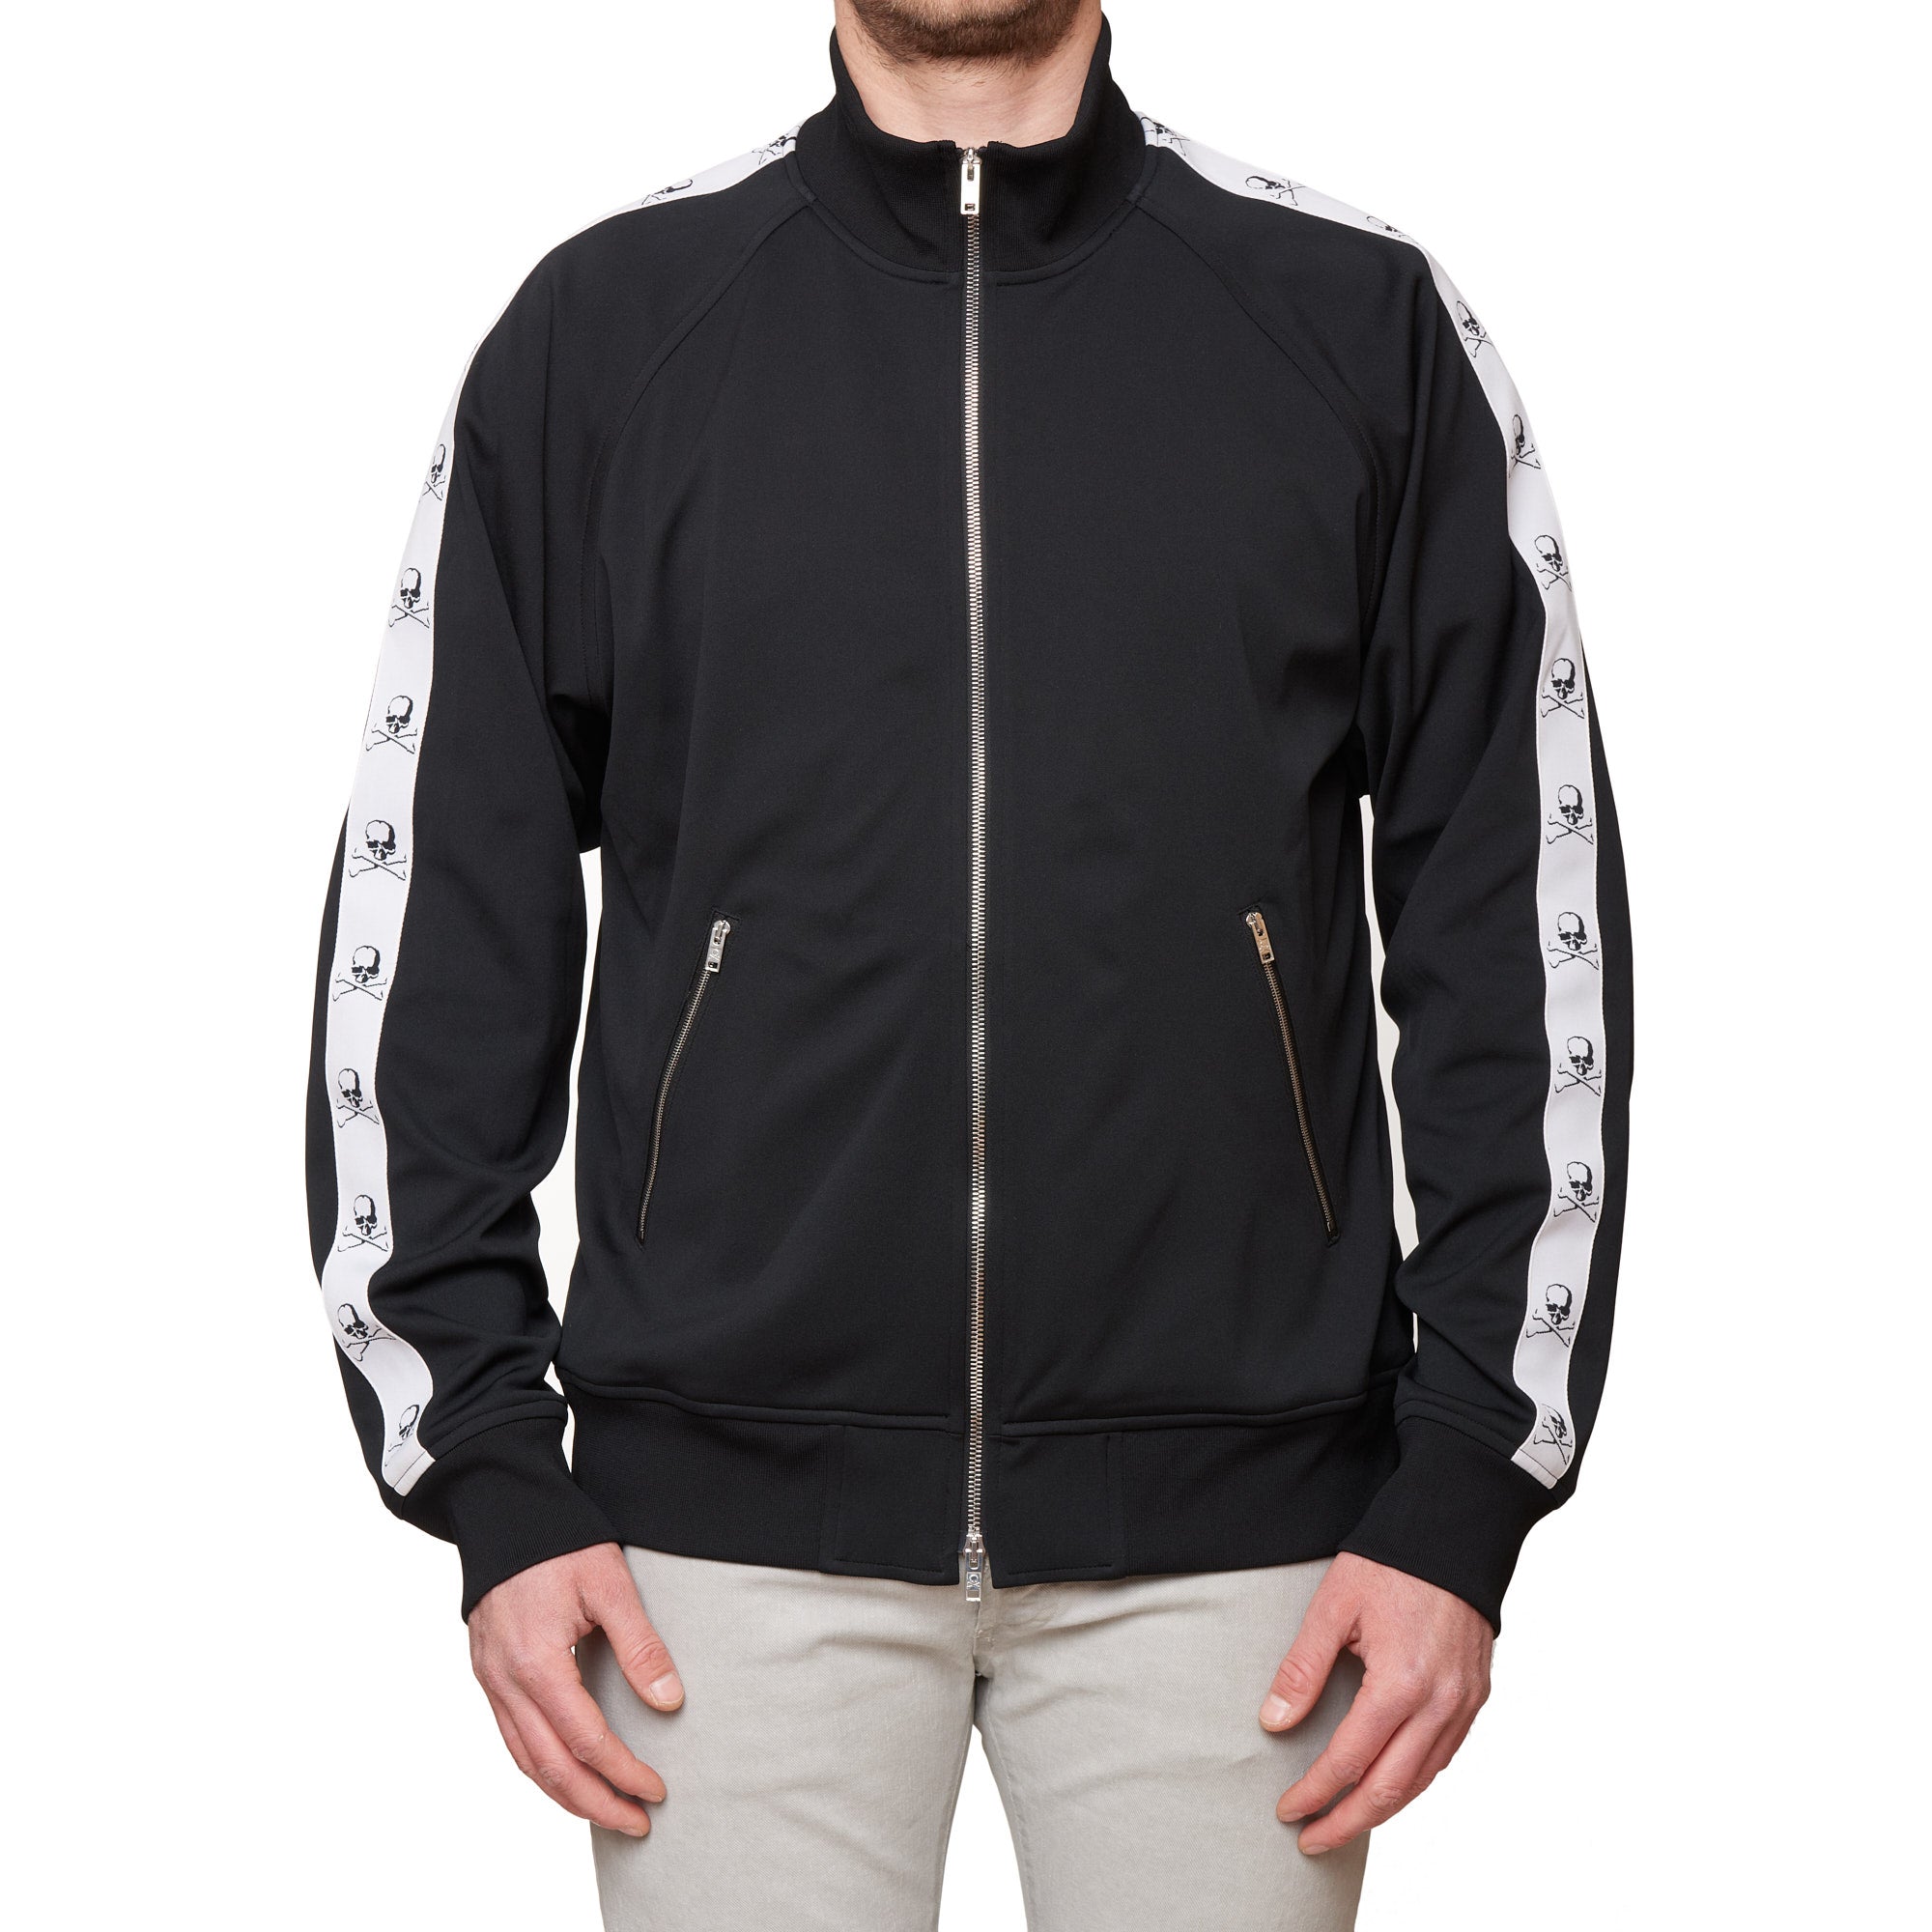 MASTERMIND WORLD Black Taped Track Jacket Full Zip Cardigan Coat NEW Size XL